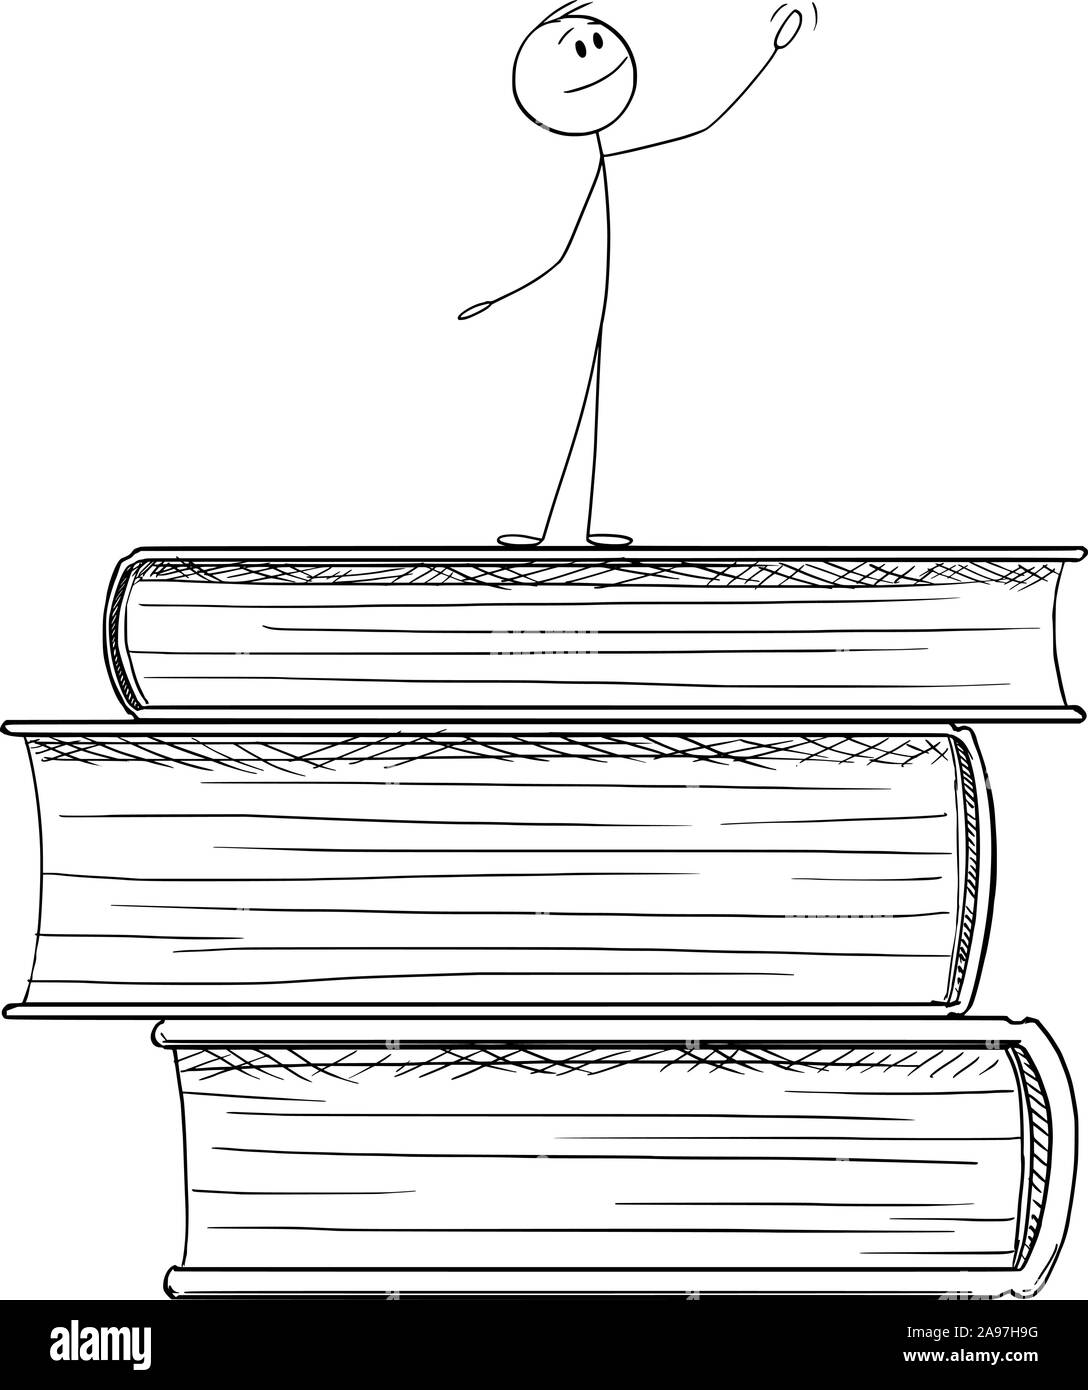 Vector cartoon stick figura disegno illustrazione concettuale dell'uomo in piedi sulla pila di grandi libri e lodando l educazione e la conoscenza. Illustrazione Vettoriale